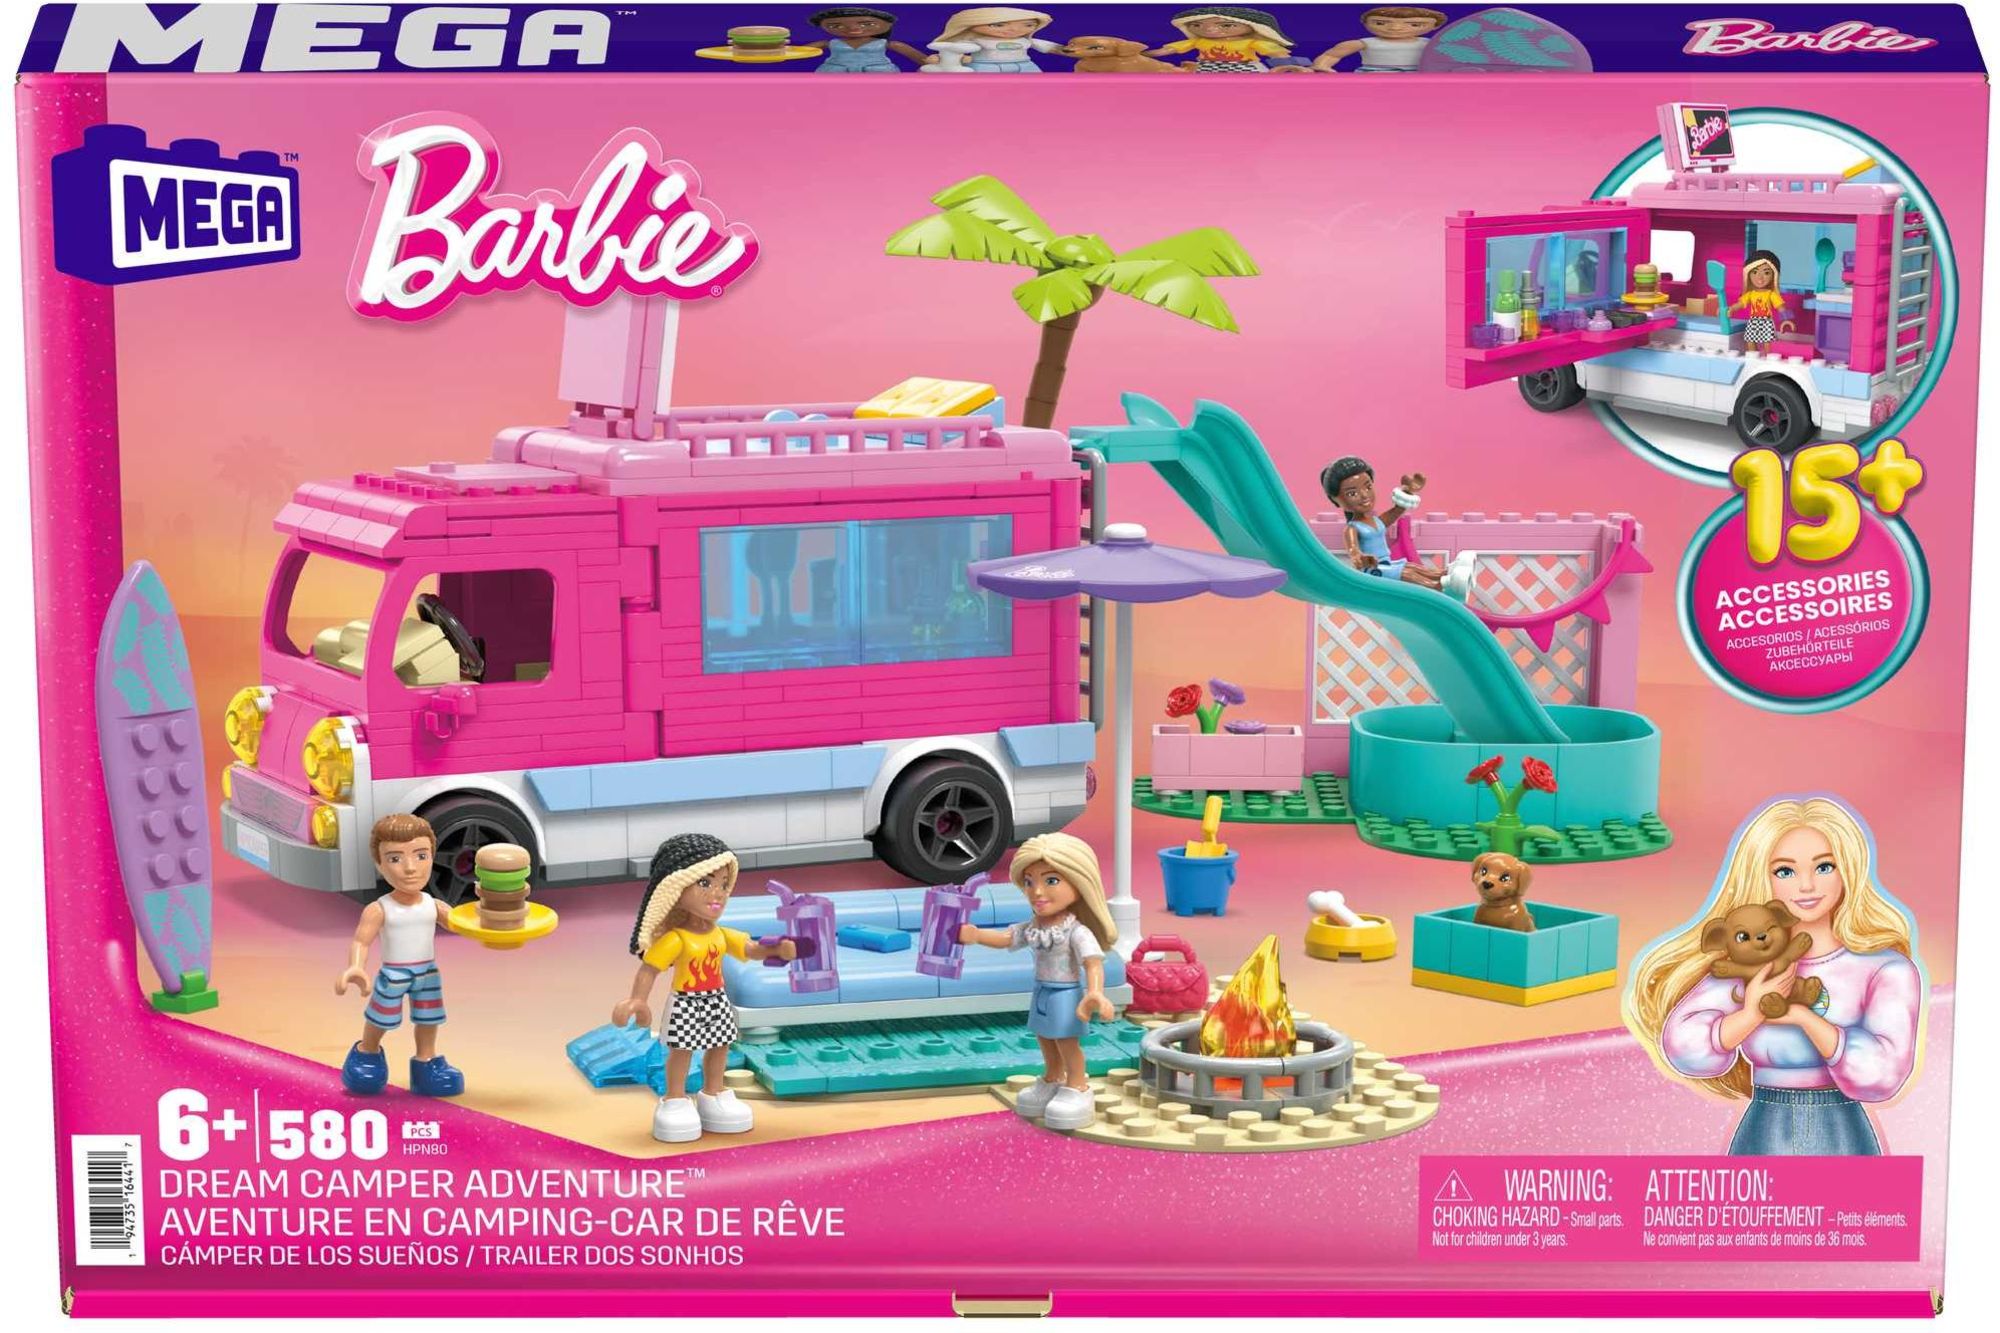 Mega Bloks - Barbie Super Abenteuer-Camper\' kaufen - Spielwaren